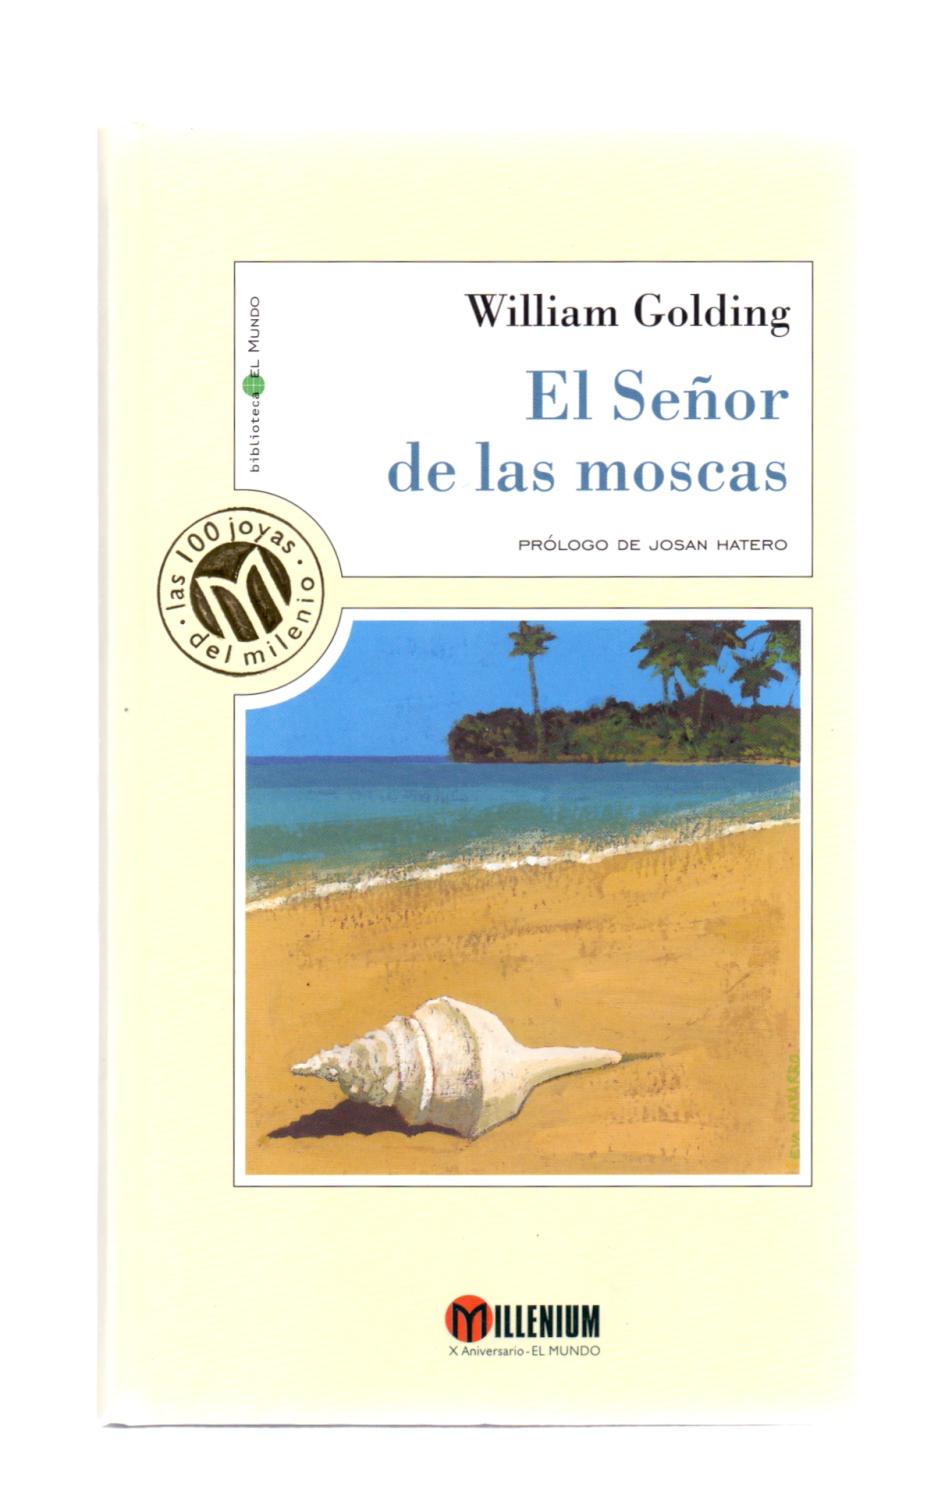 EL SEÑOR DE LAS MOSCAS by William Golding - Prólogo de Josan Hatero